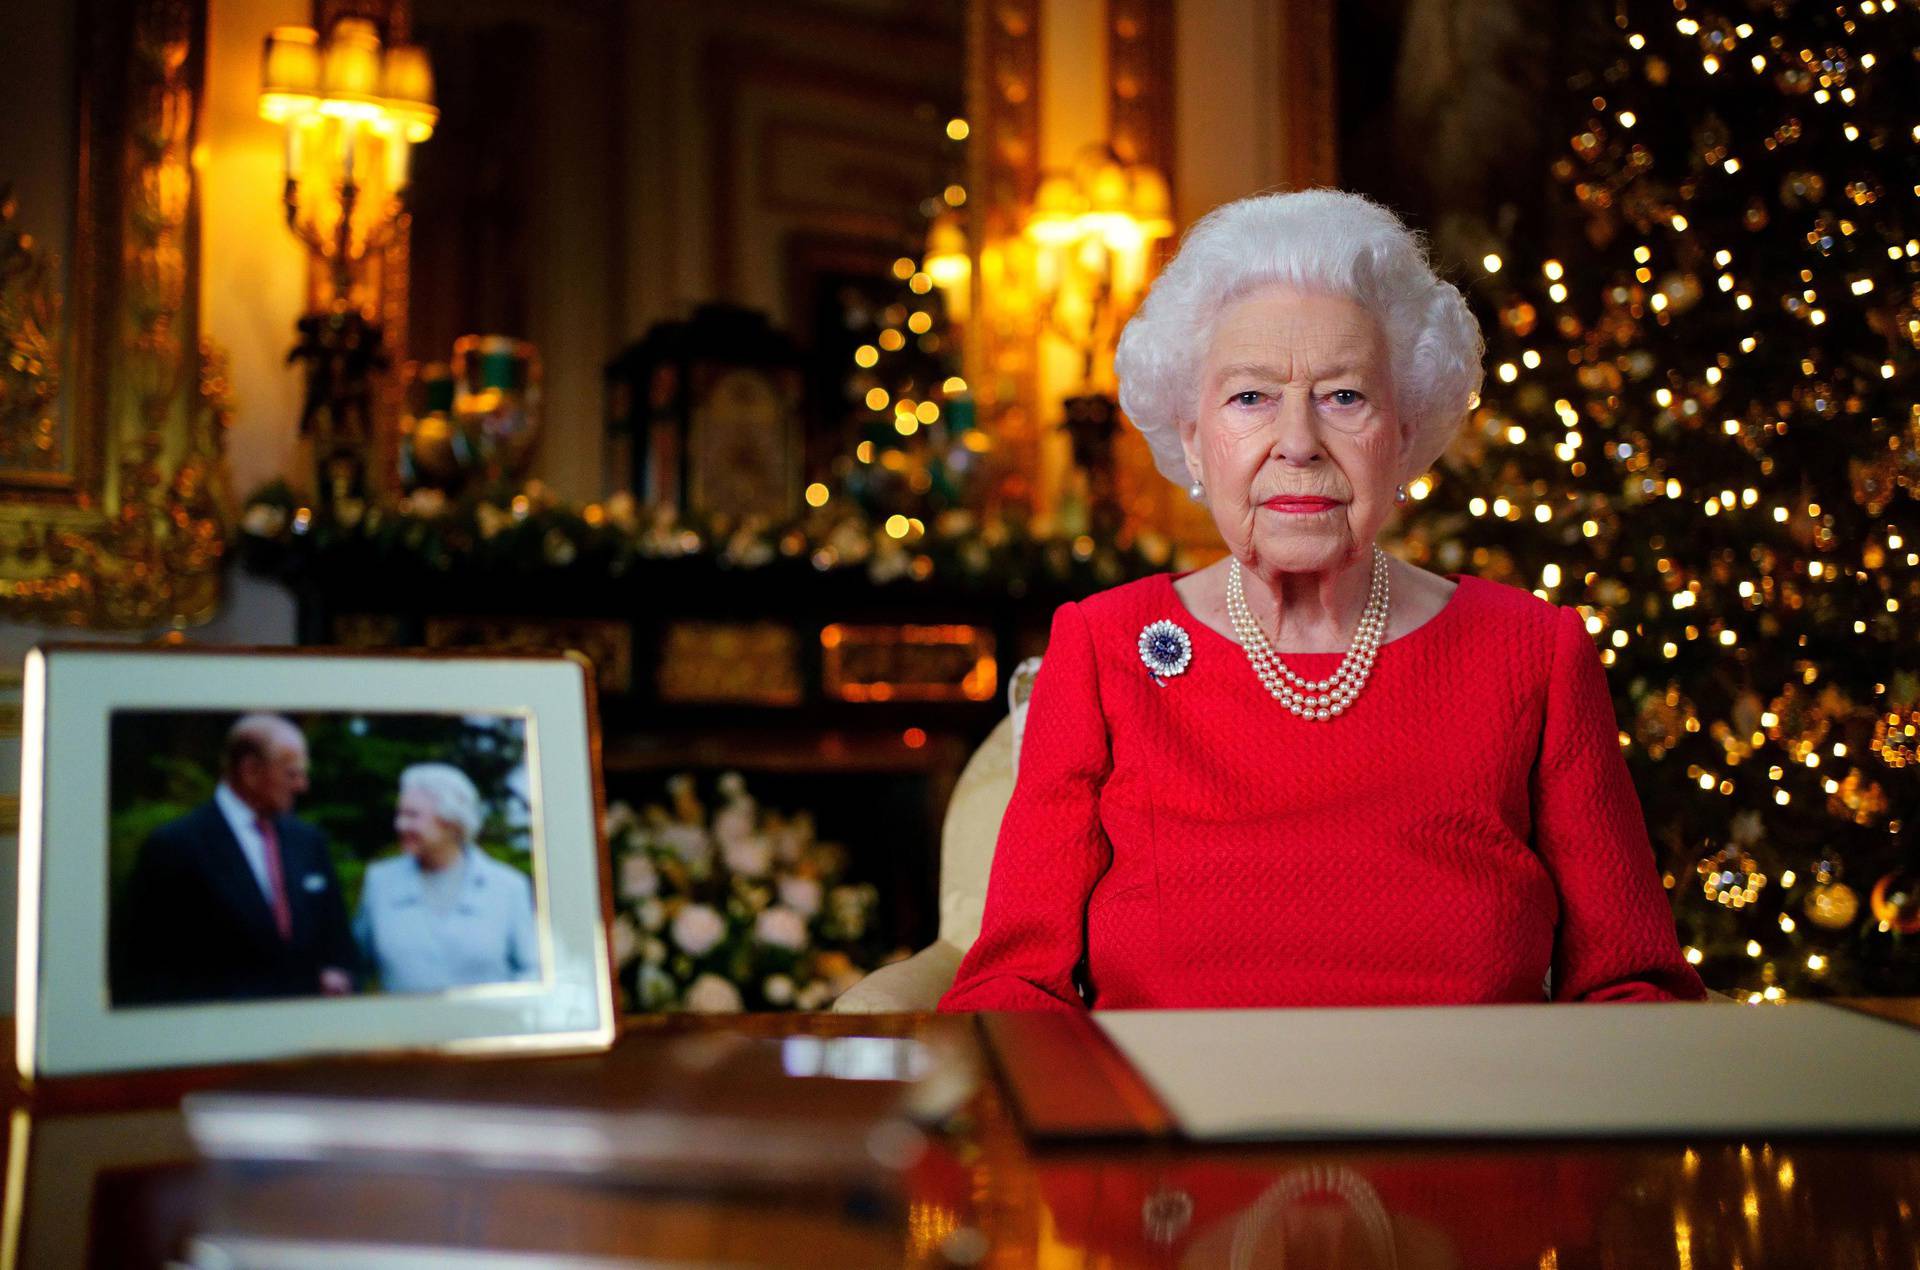 Charles i Camilla provest će Božić s kraljicom Elizabetom